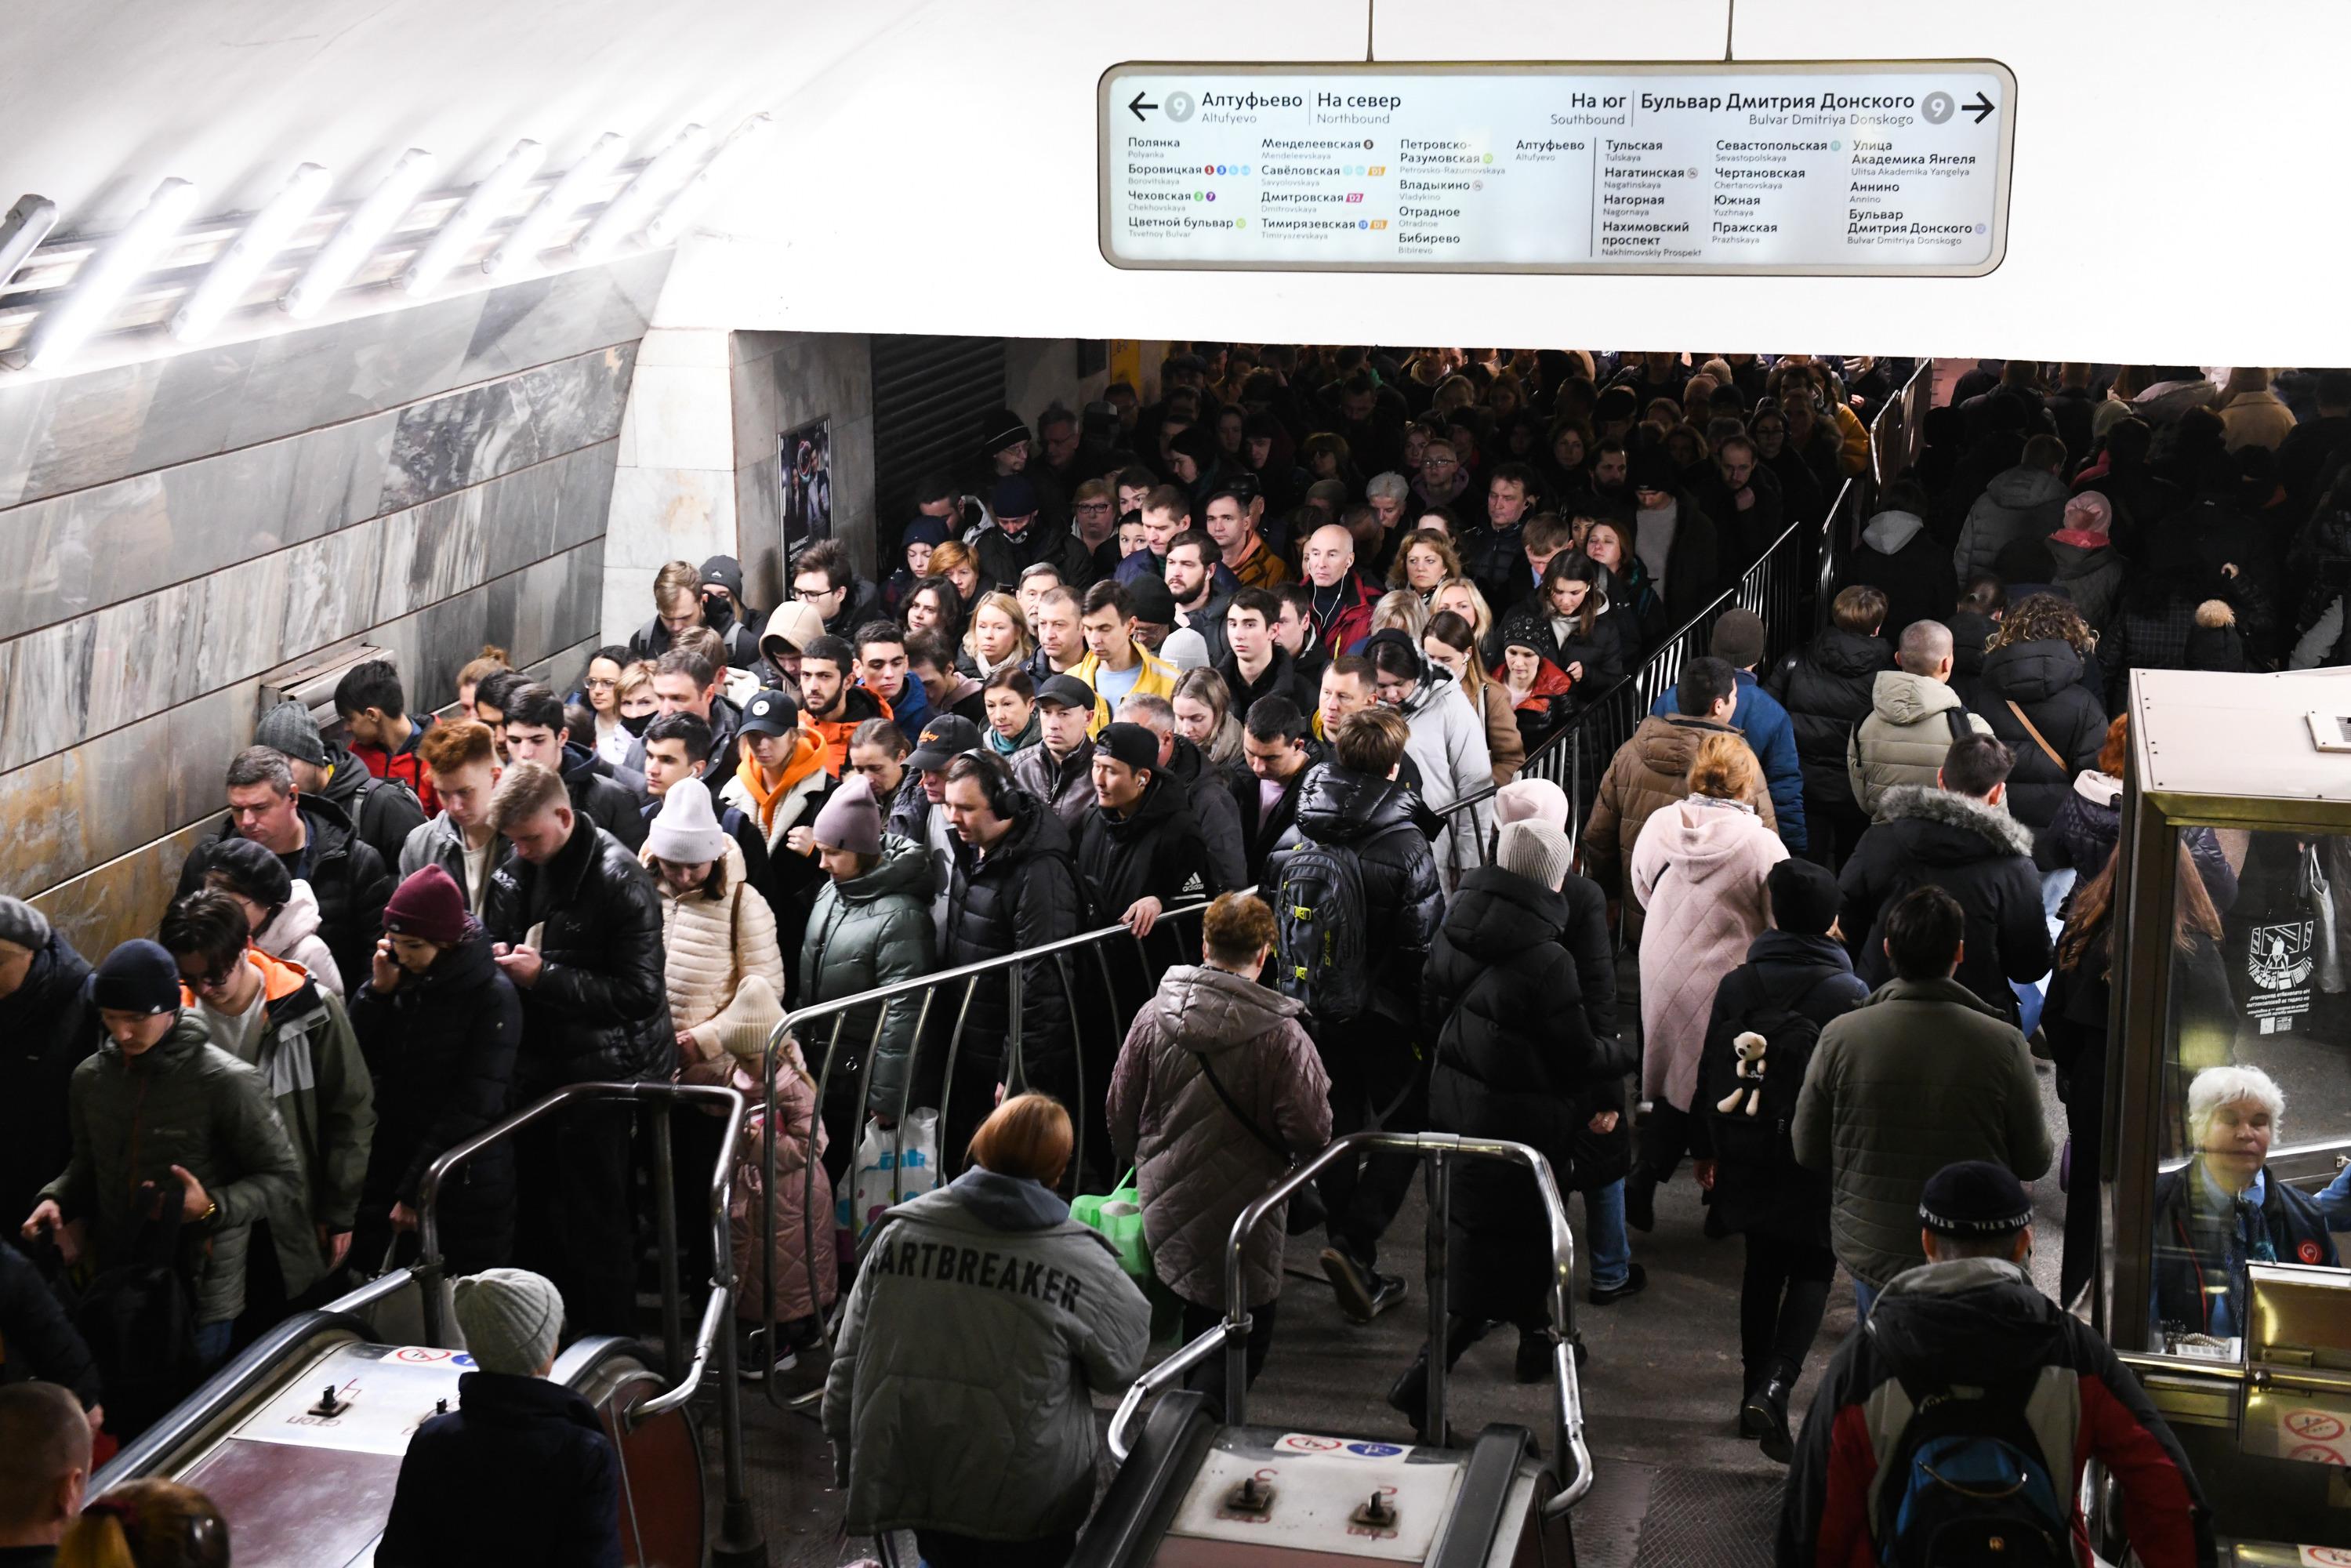 Московское метро. Москва люди. Самые загруженные станции метро Москвы в час пик. Поток людей в метро Москвы в день.